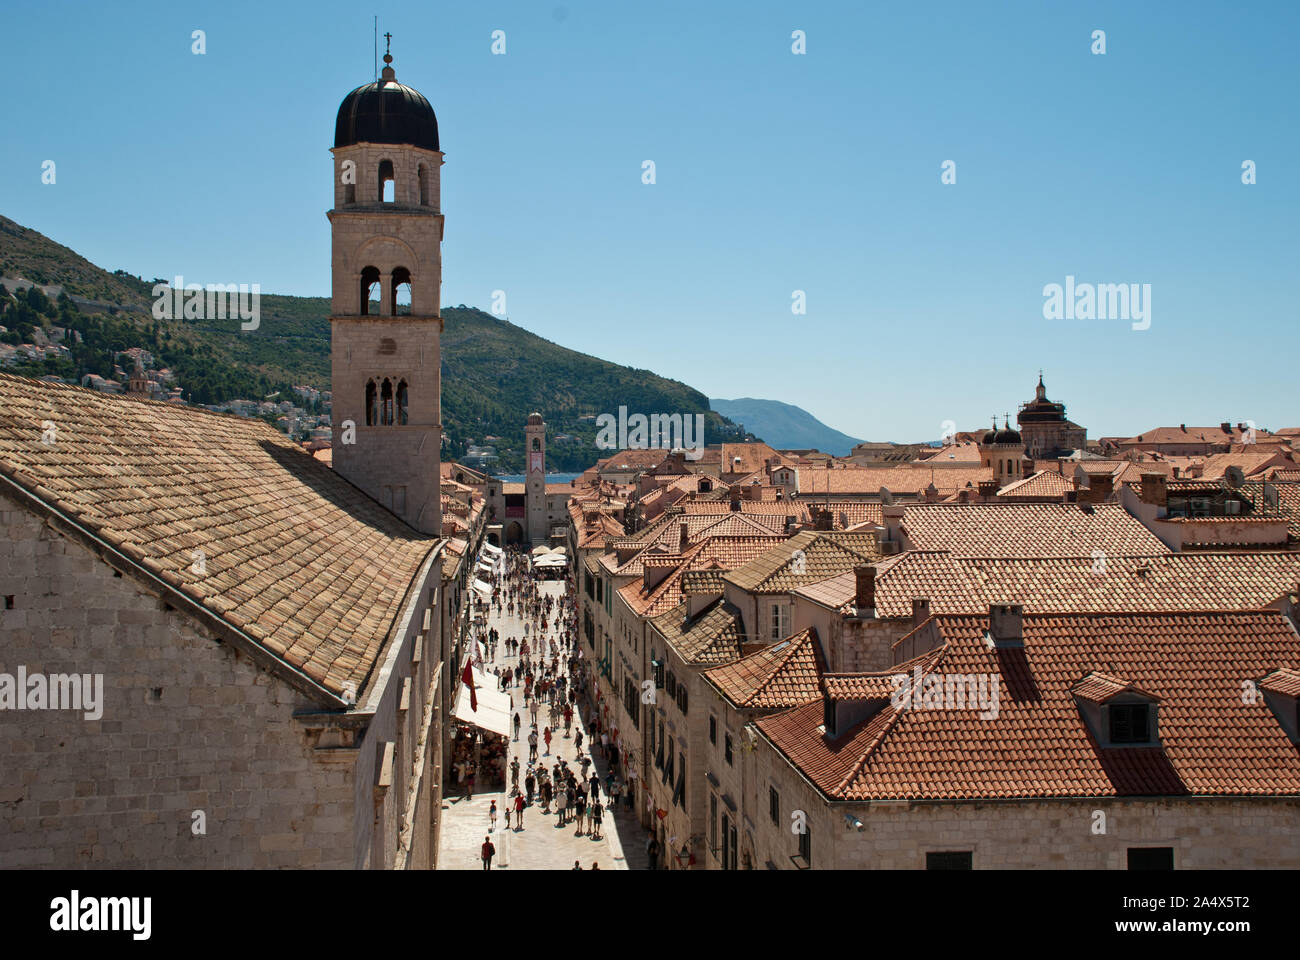 Areal vue de la rue principale Stradun dans la vieille ville de Dubrovnik, Croatie. La rue piétonne pavée de calcaire s'exécute environ 300 mètres par la lo Banque D'Images